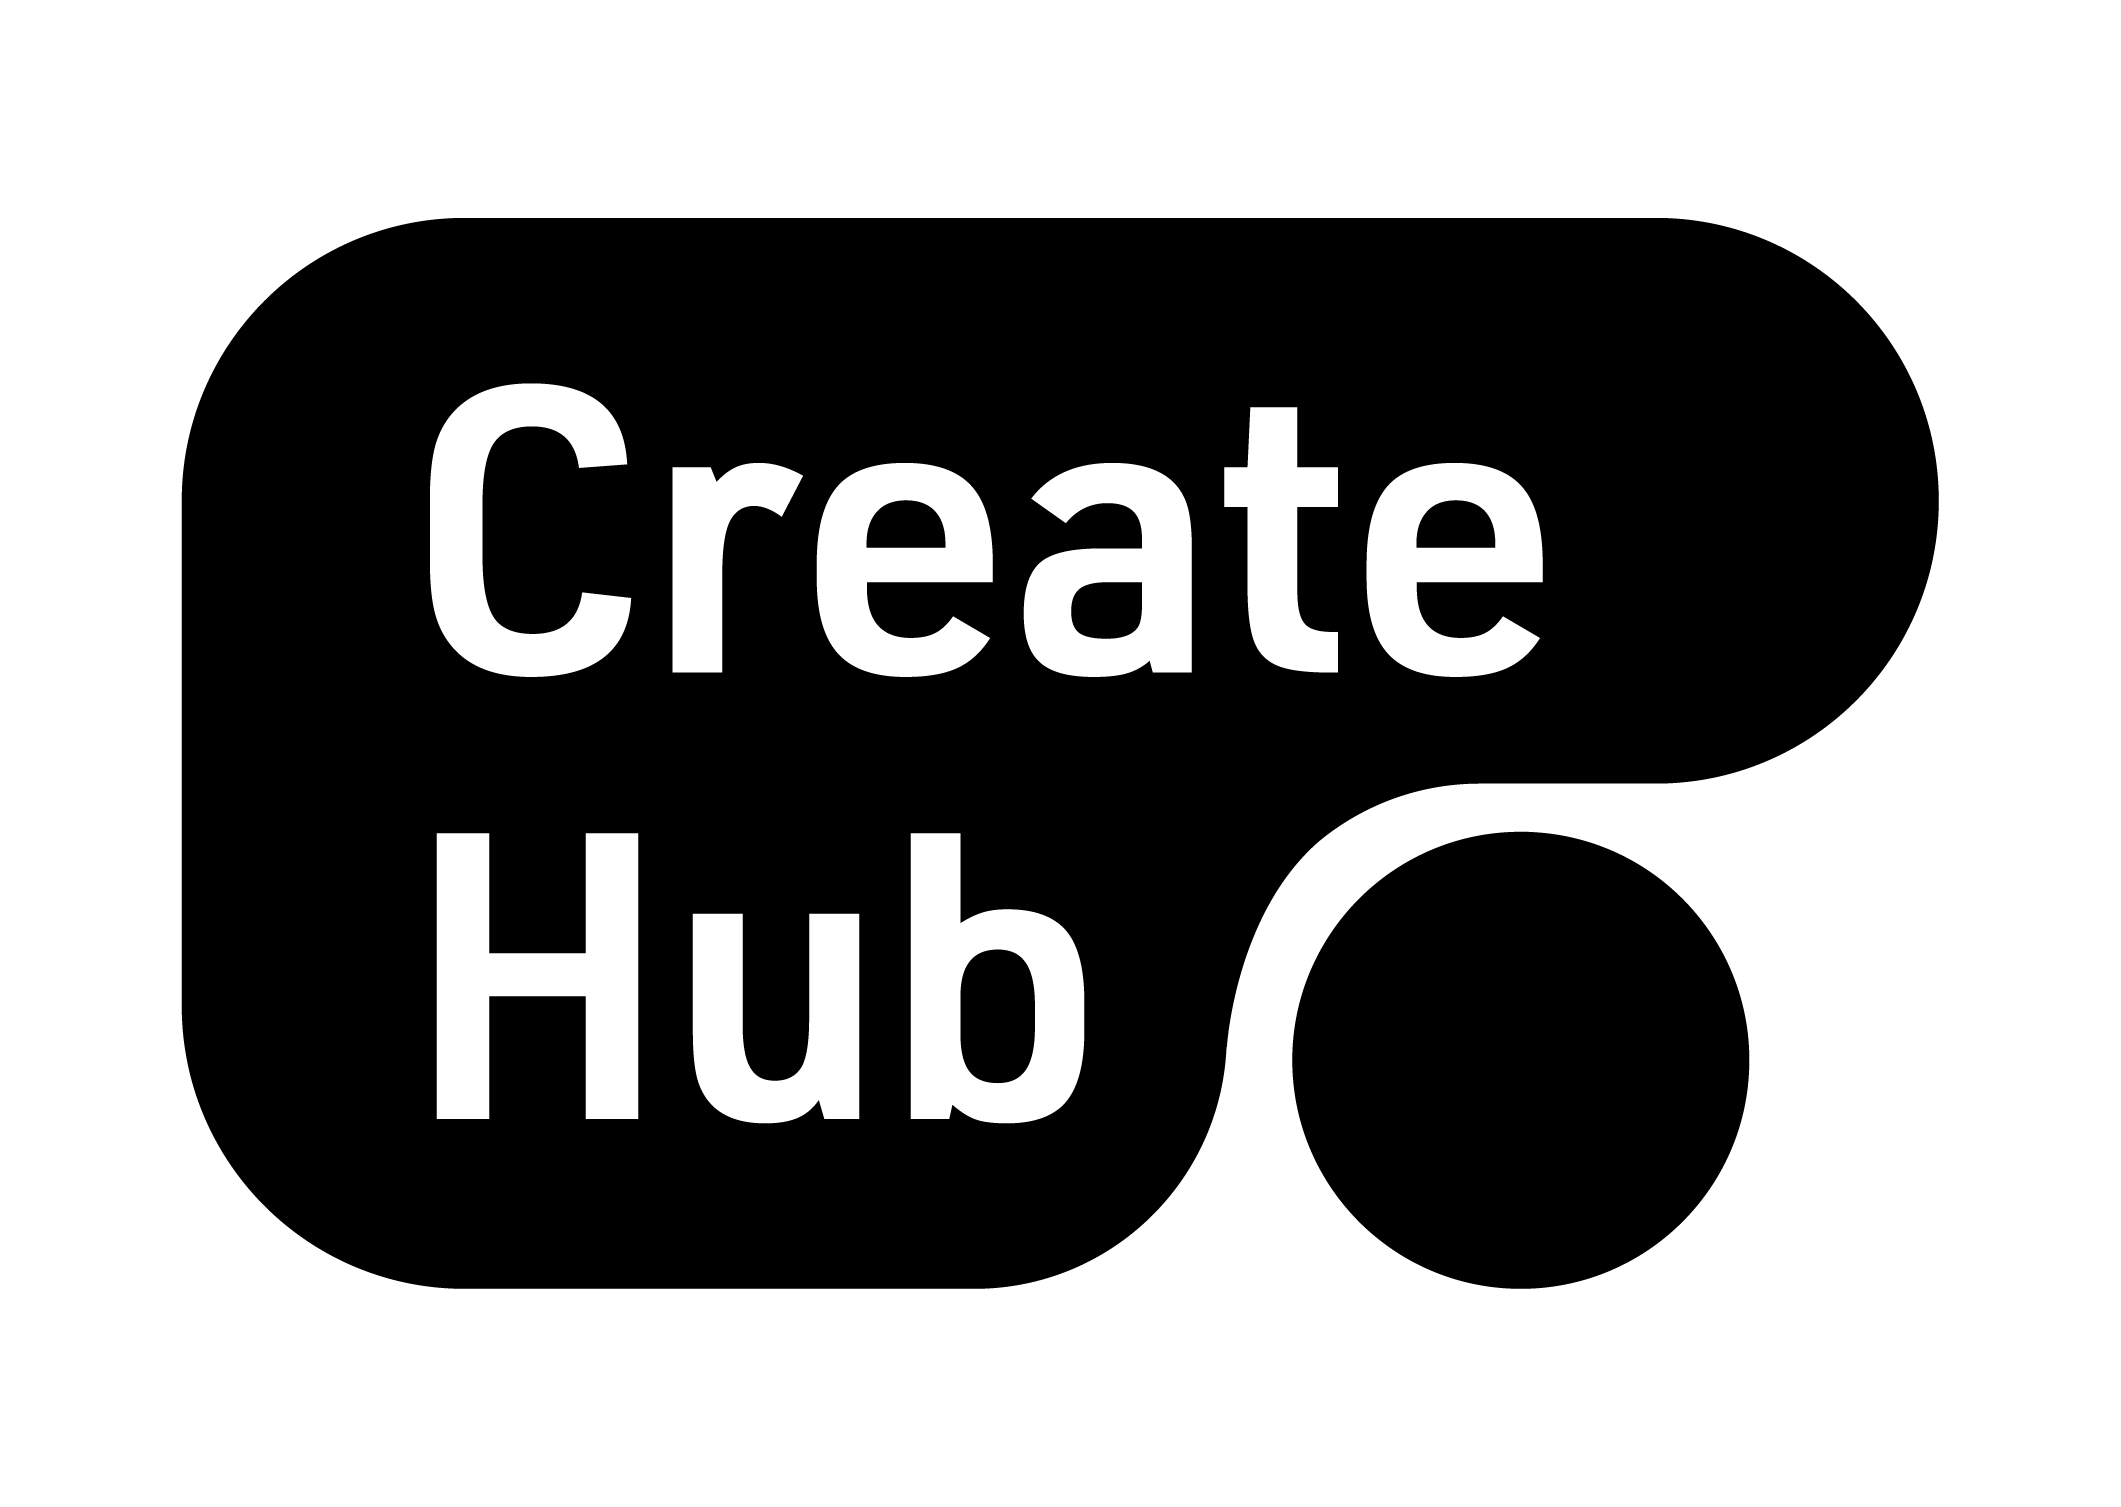 Create hub